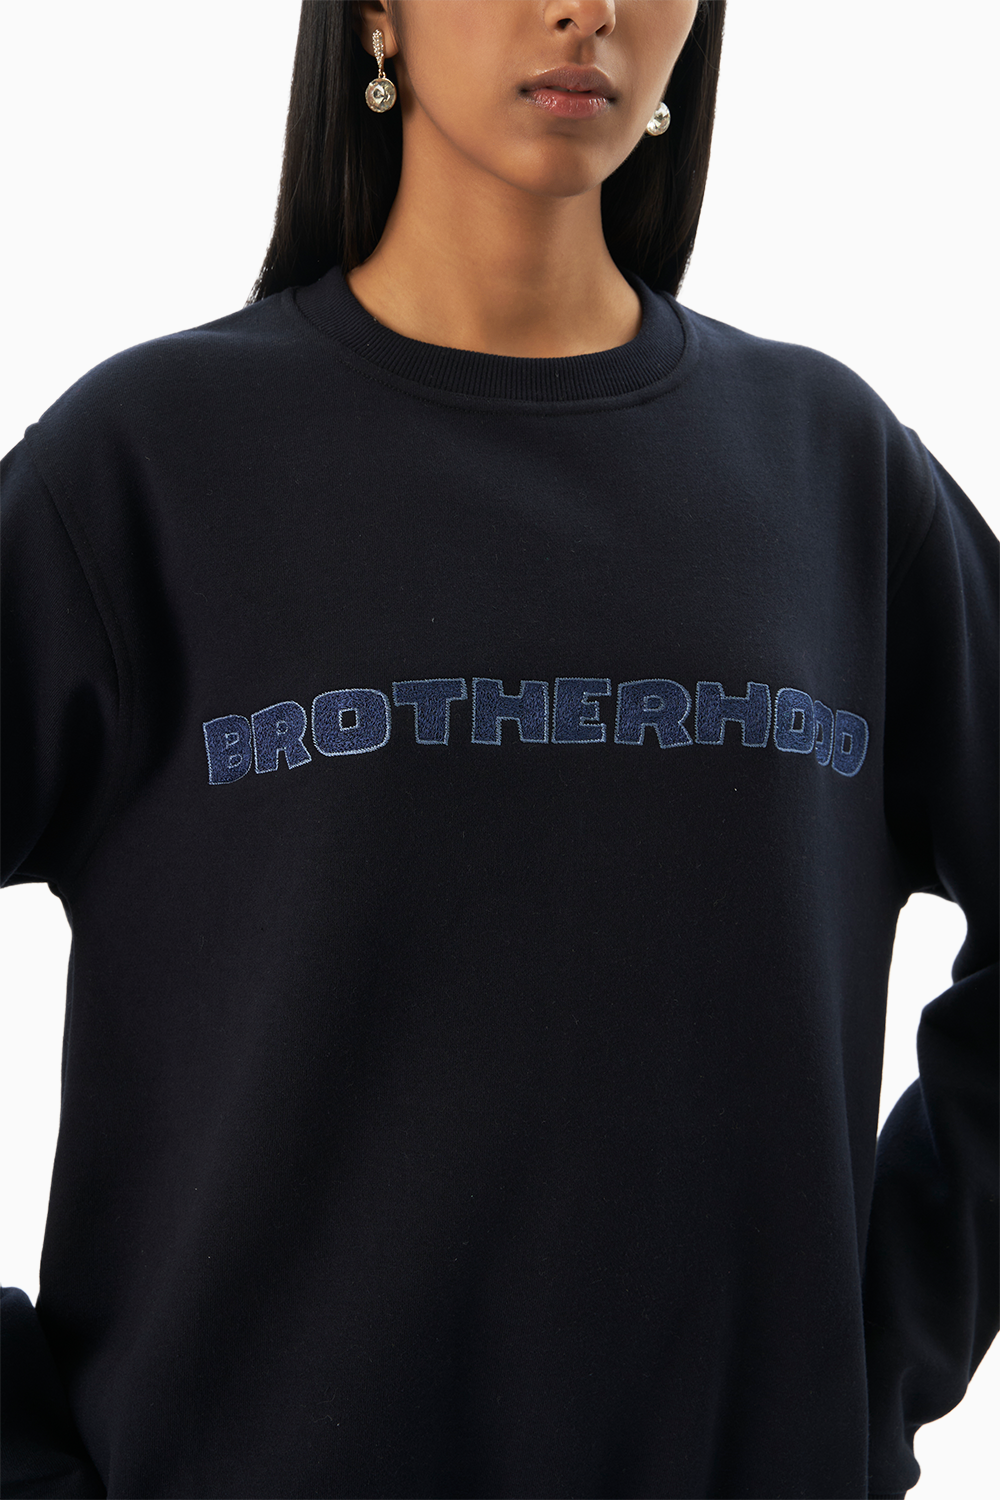 Brotherhood Embroidered Sweatshirt